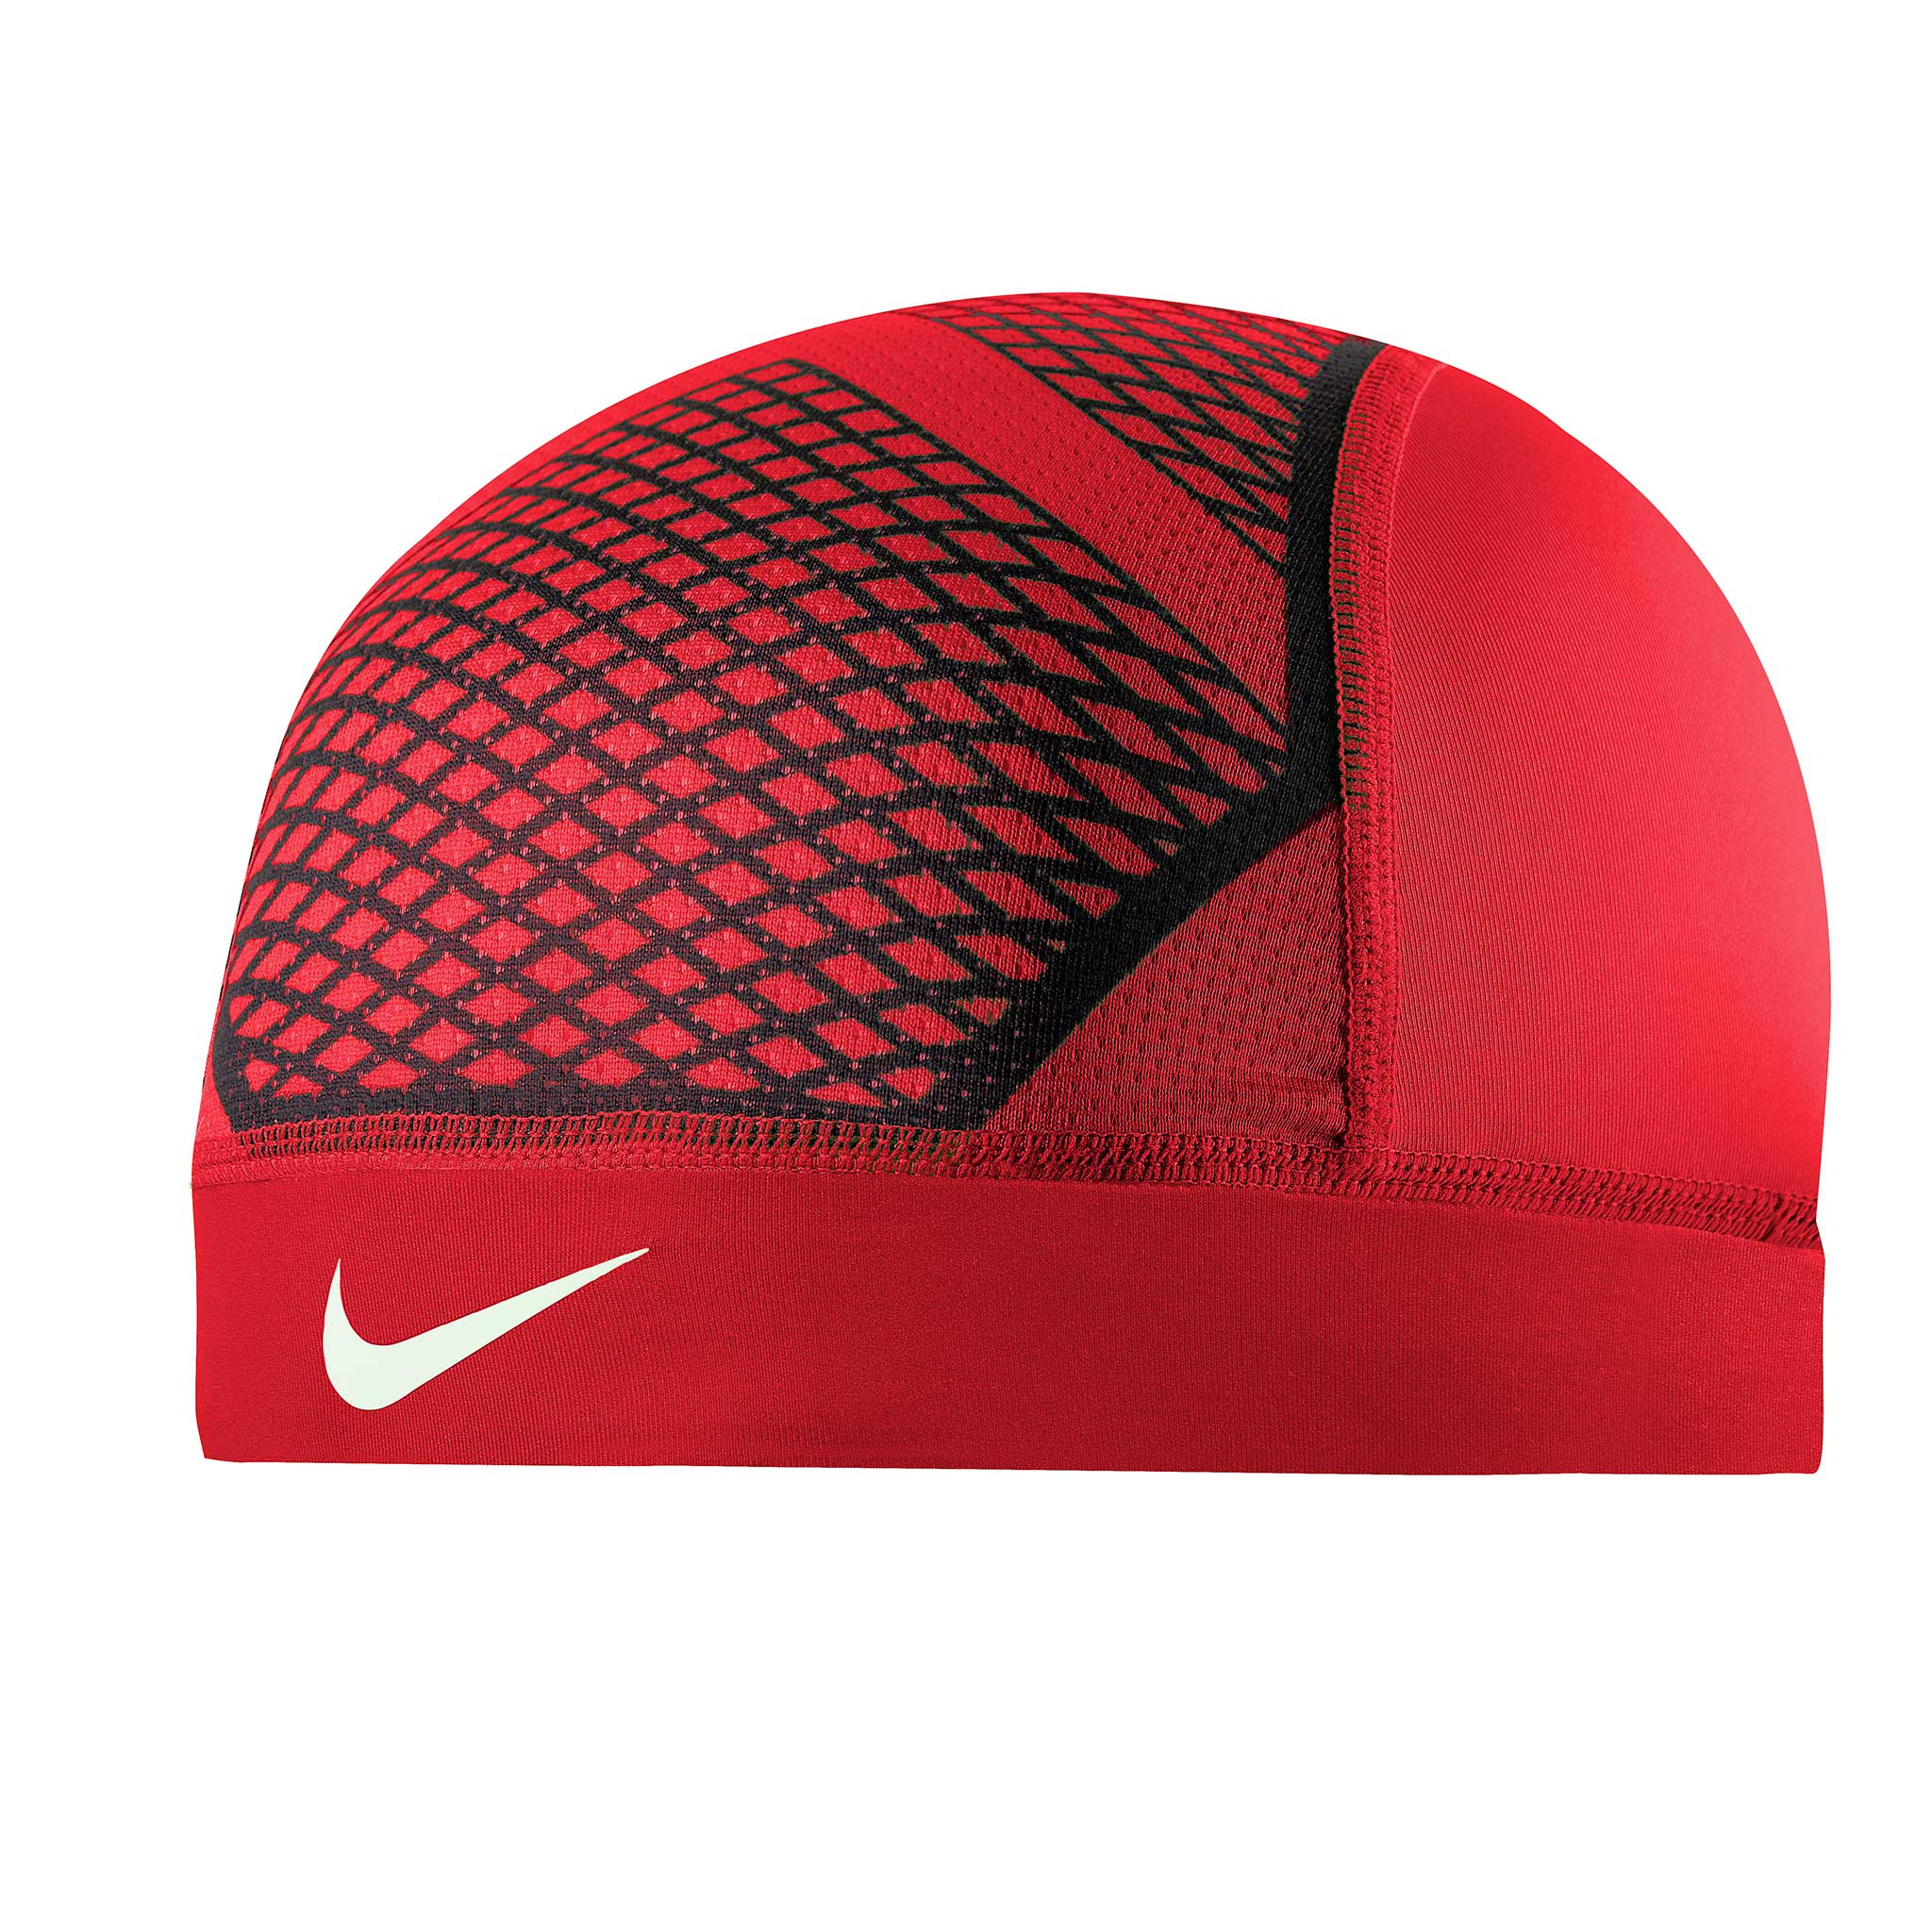 Nike Pro Hypercool Vapor Skull Cap 4.0 for Football – Soccer Sport